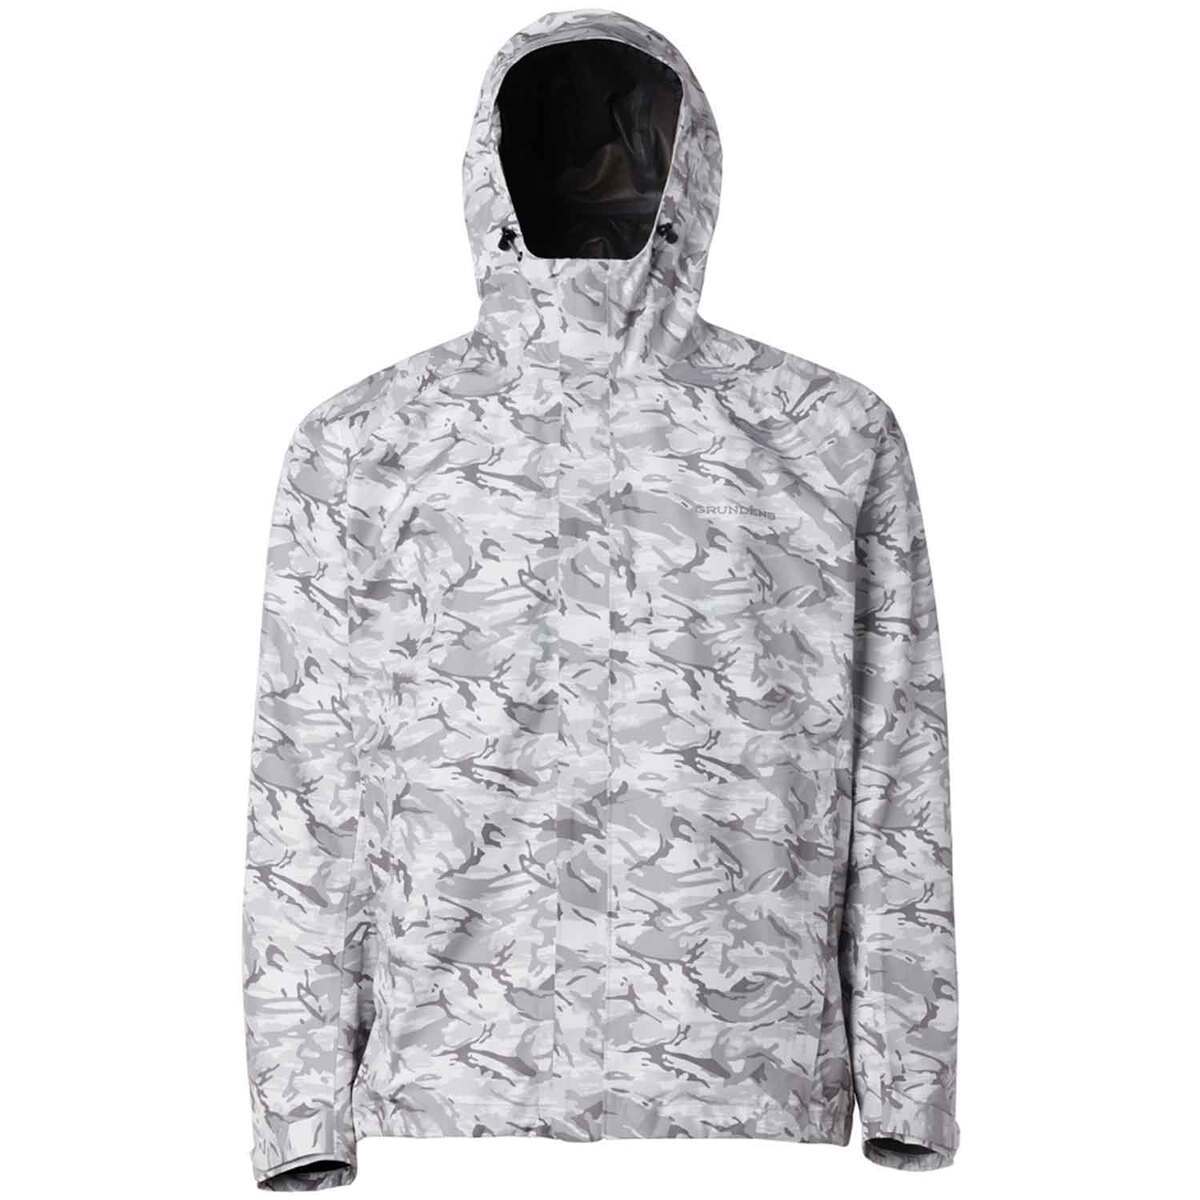 https://www.sportsmans.com/medias/grundens-mens-charter-gore-tex-waterproof-packable-rain-jacket-refraction-glacier-camo-s-1622263-1.jpg?context=bWFzdGVyfGltYWdlc3w5MzQ5OXxpbWFnZS9qcGVnfGFHWTVMMmd5WXk4eE1EQXhOelF4TWpjeE1EUXpNQzh4TmpJeU1qWXpMVEZmWW1GelpTMWpiMjUyWlhKemFXOXVSbTl5YldGMFh6RXlNREF0WTI5dWRtVnljMmx2YmtadmNtMWhkQXxmYTgzMDljNTMxMGY5ZWYzZGU3M2FmMDAyOTVkNjRiZmQyNjc5MWU1YjdiOWFhYTMzZTI5OTZiNmI2ZTVmN2I0